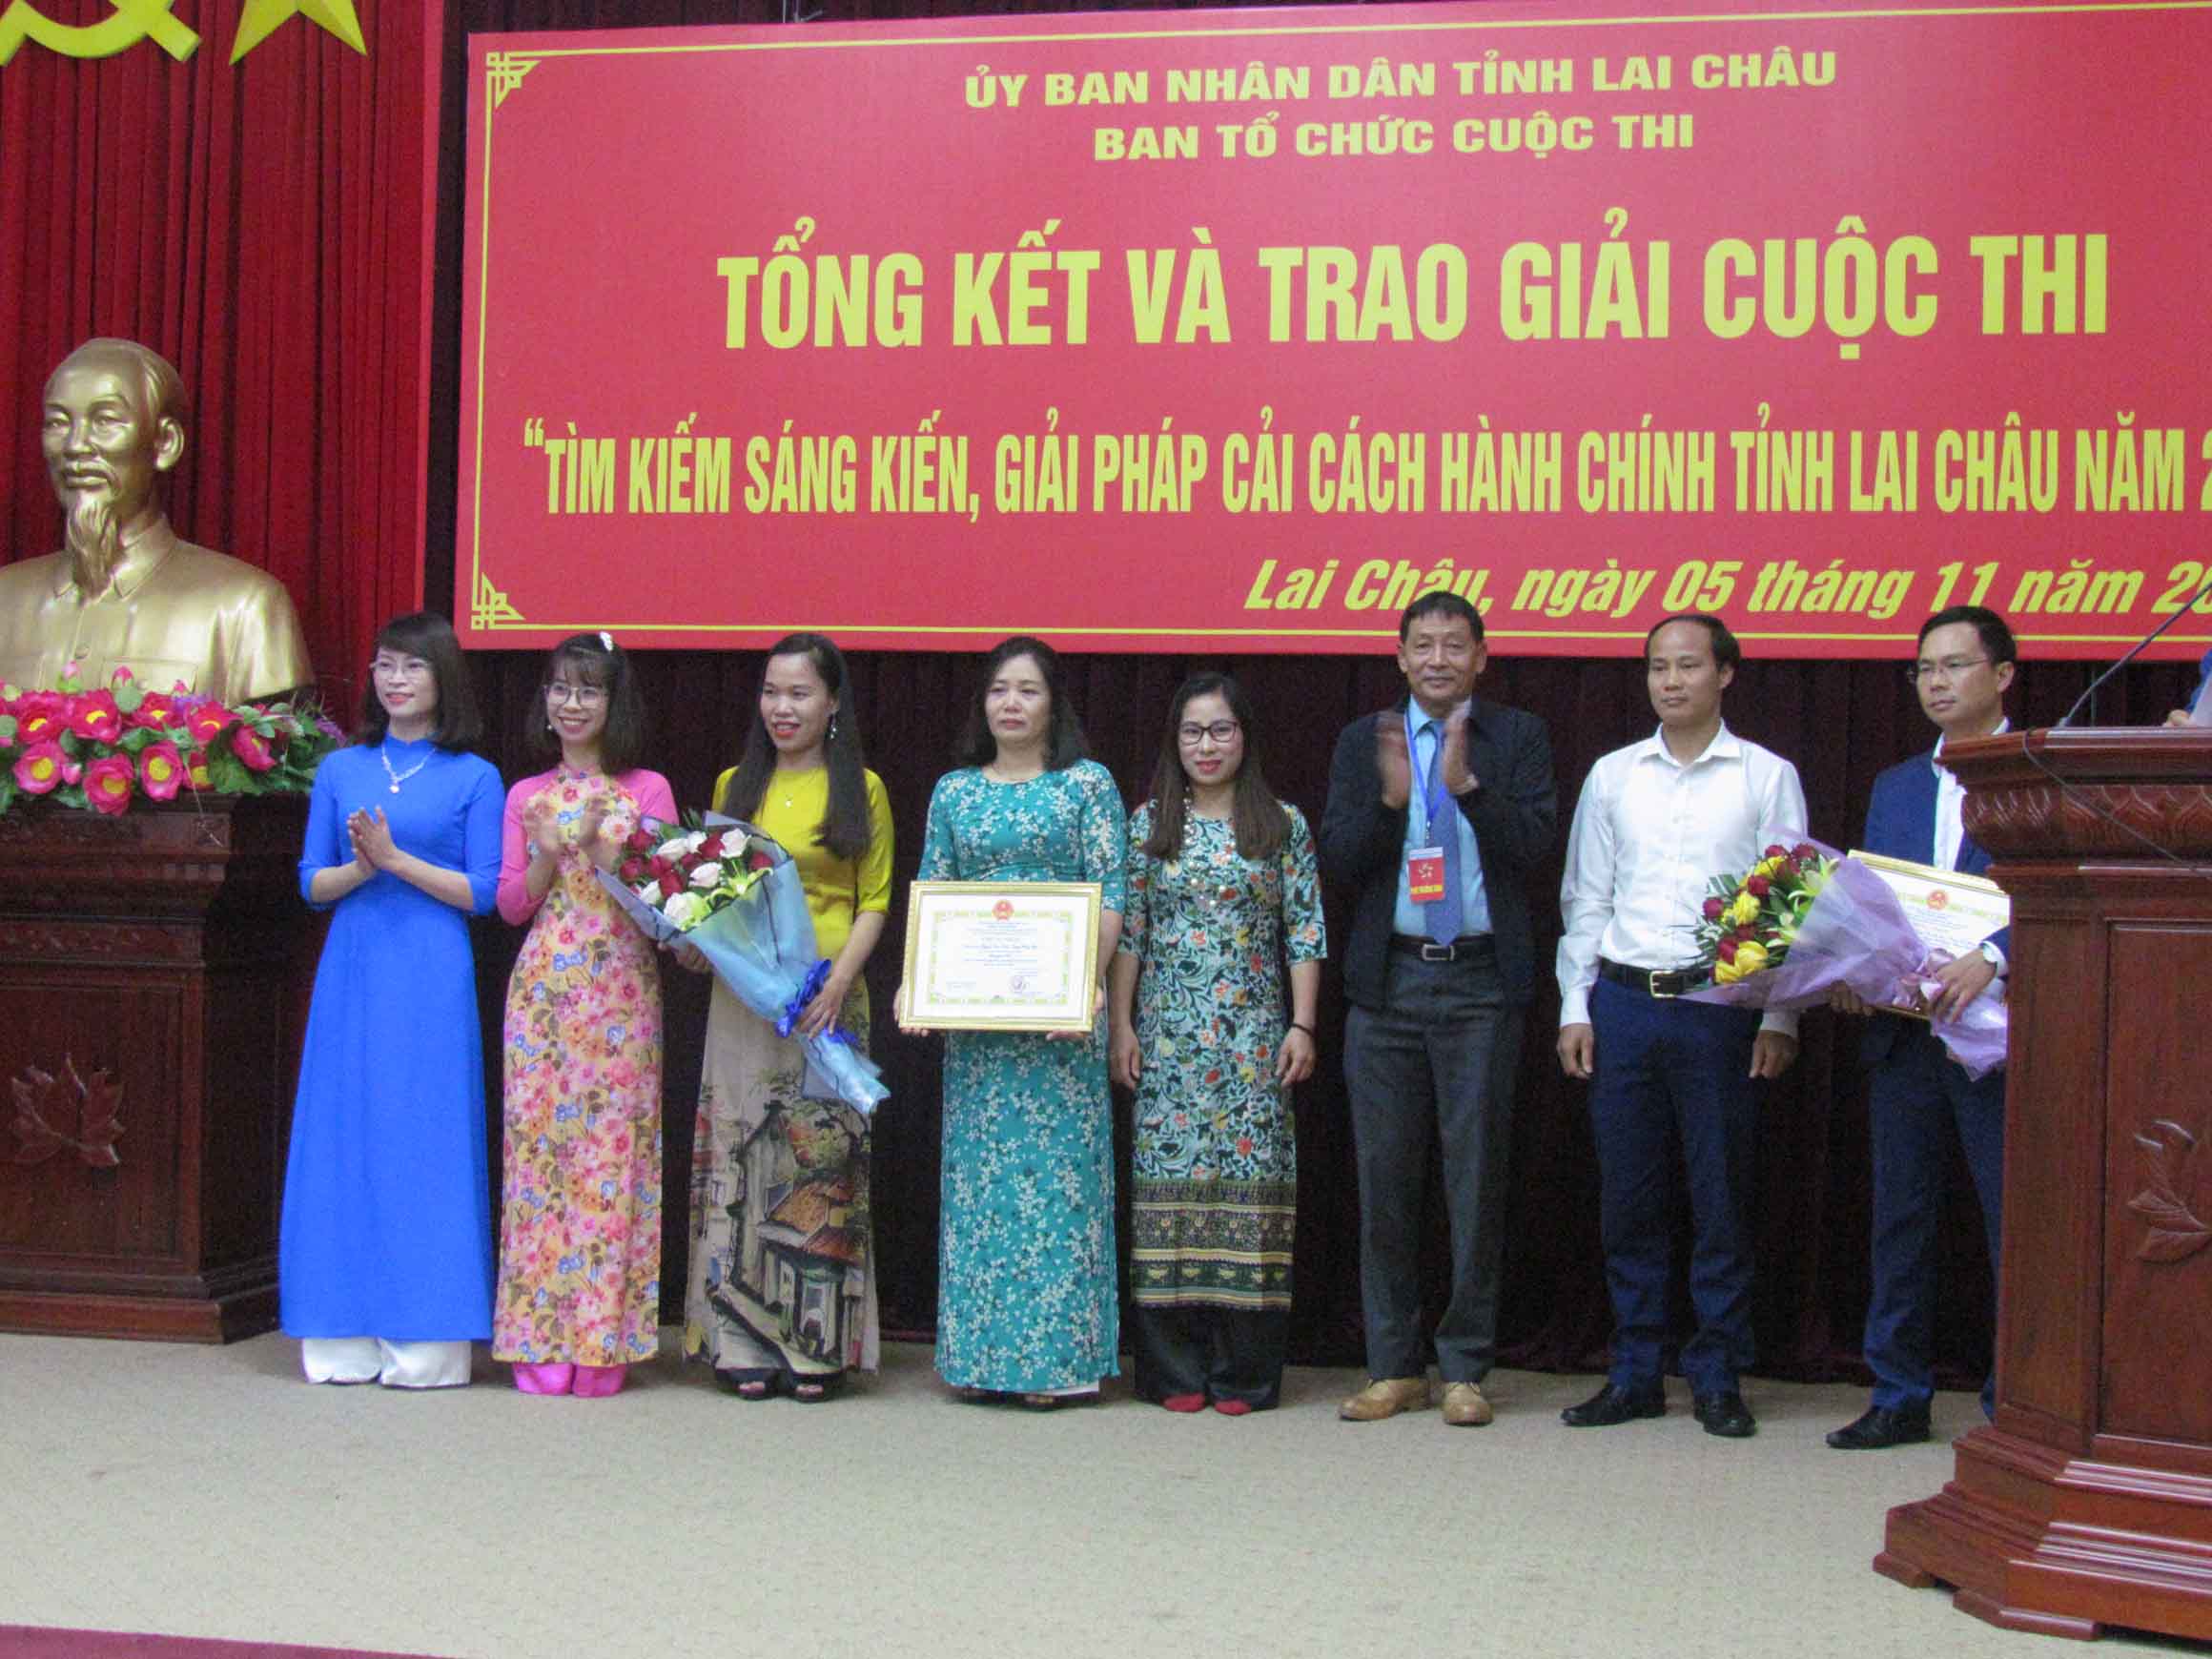 Đồng chí Nguyễn Văn Thành – Phó Giám đốc Sở Nội vụ, Phó Trưởng Ban tổ chức Cuộc thi trao giải cho các cá nhân đoạt giải nhì tại Cuộc thi. 